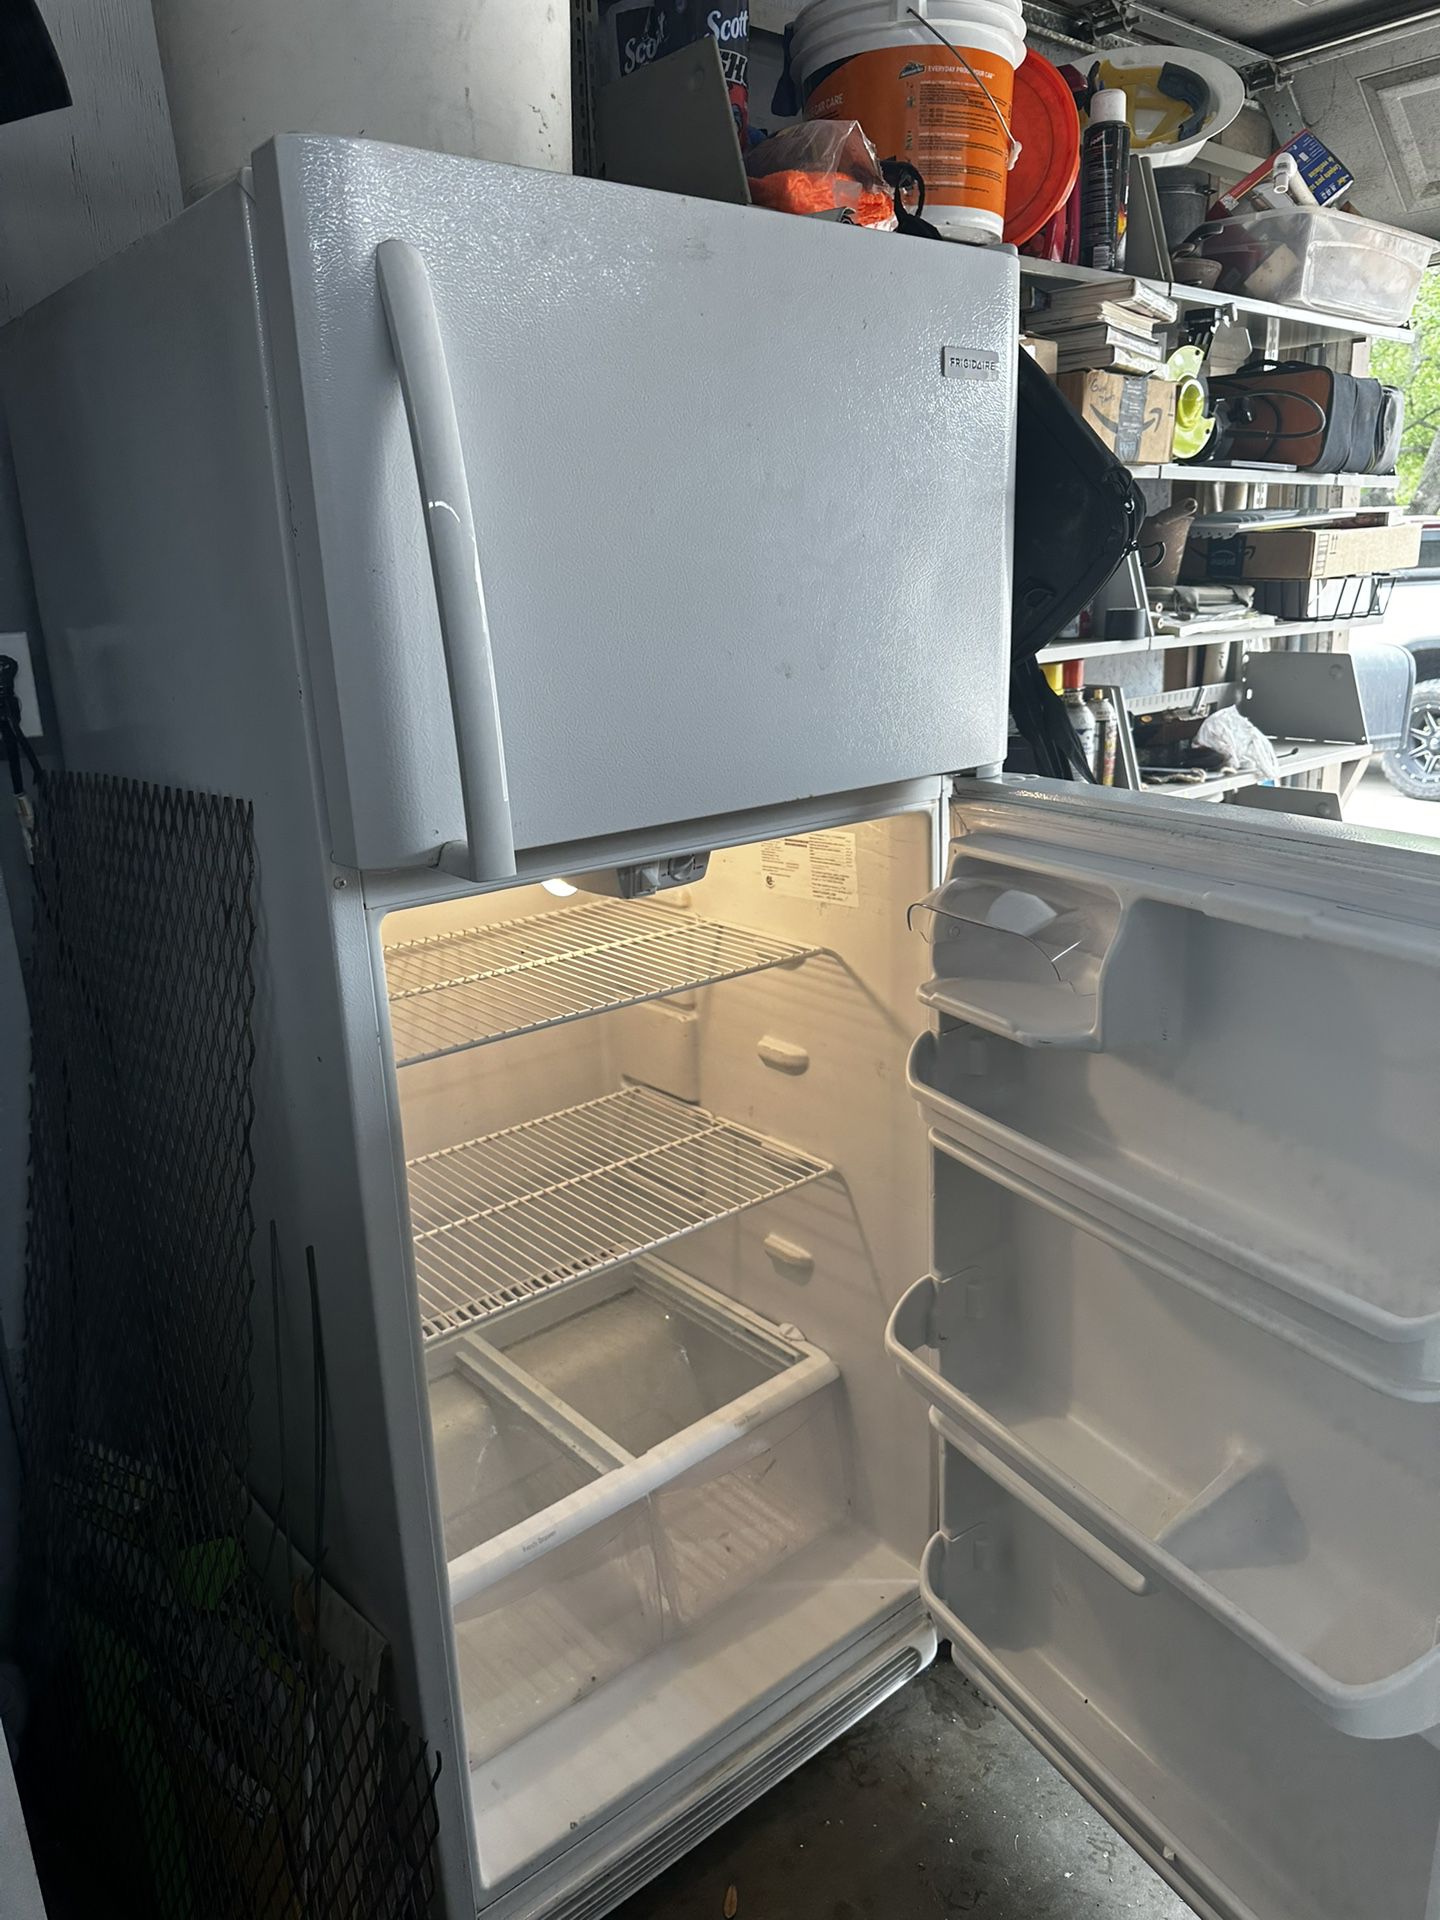 Fridgidare Refrigerator 